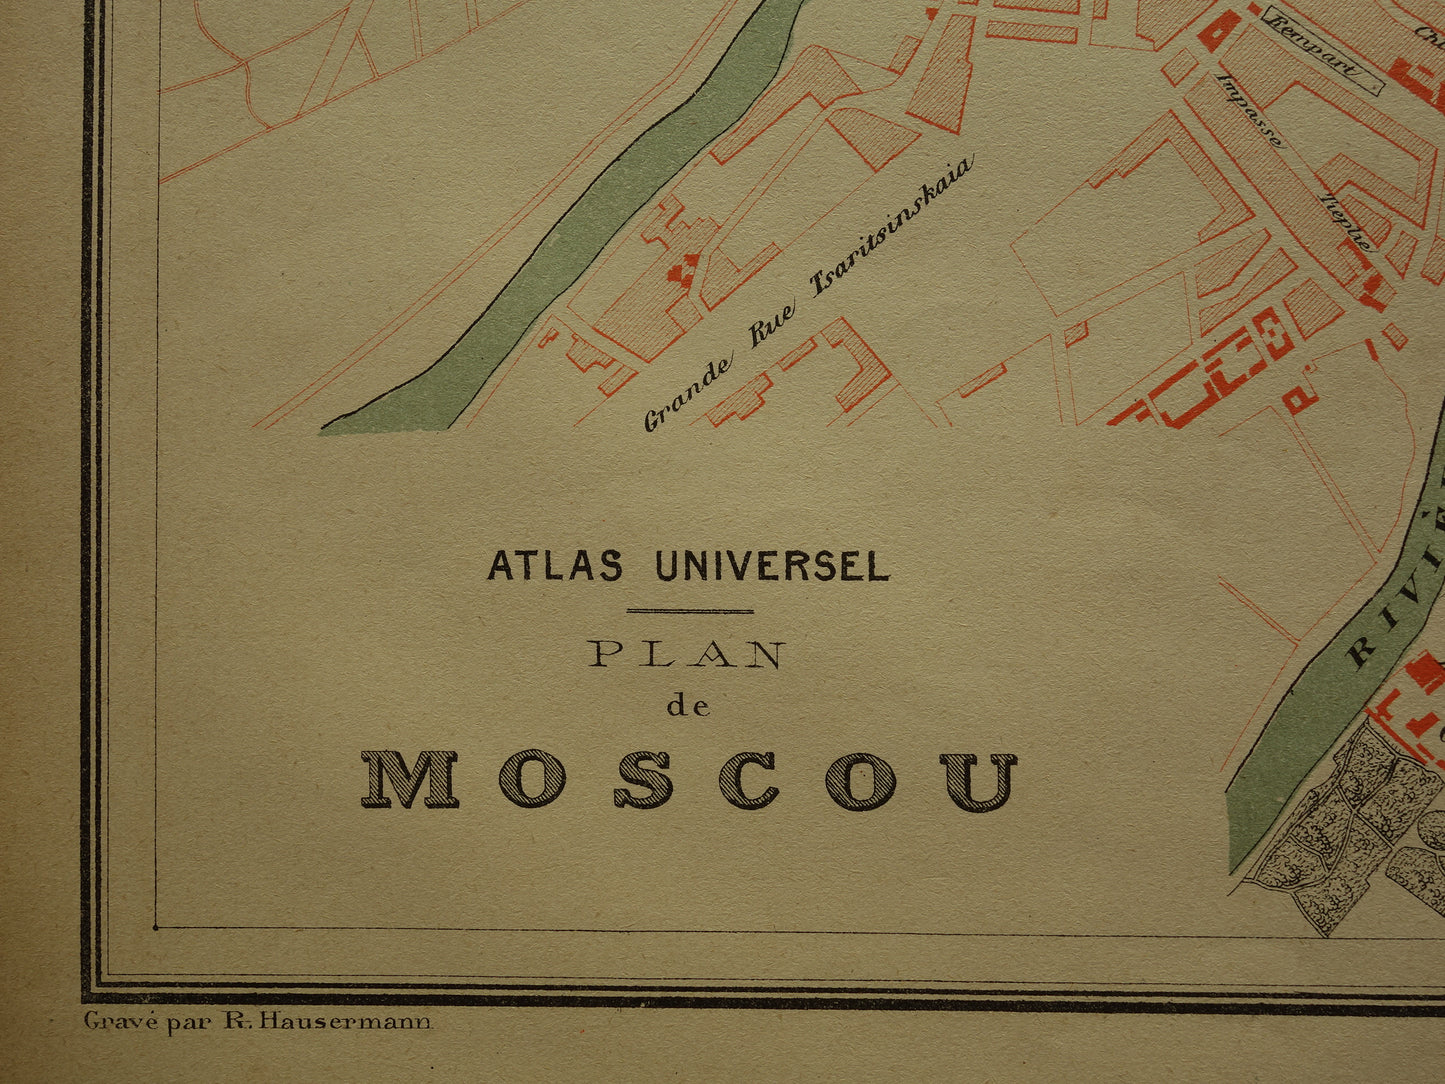 MOSKOU Oude kaart van Moskou Rusland uit 1879 - beschadigd - originele historische plattegrond antieke kaarten